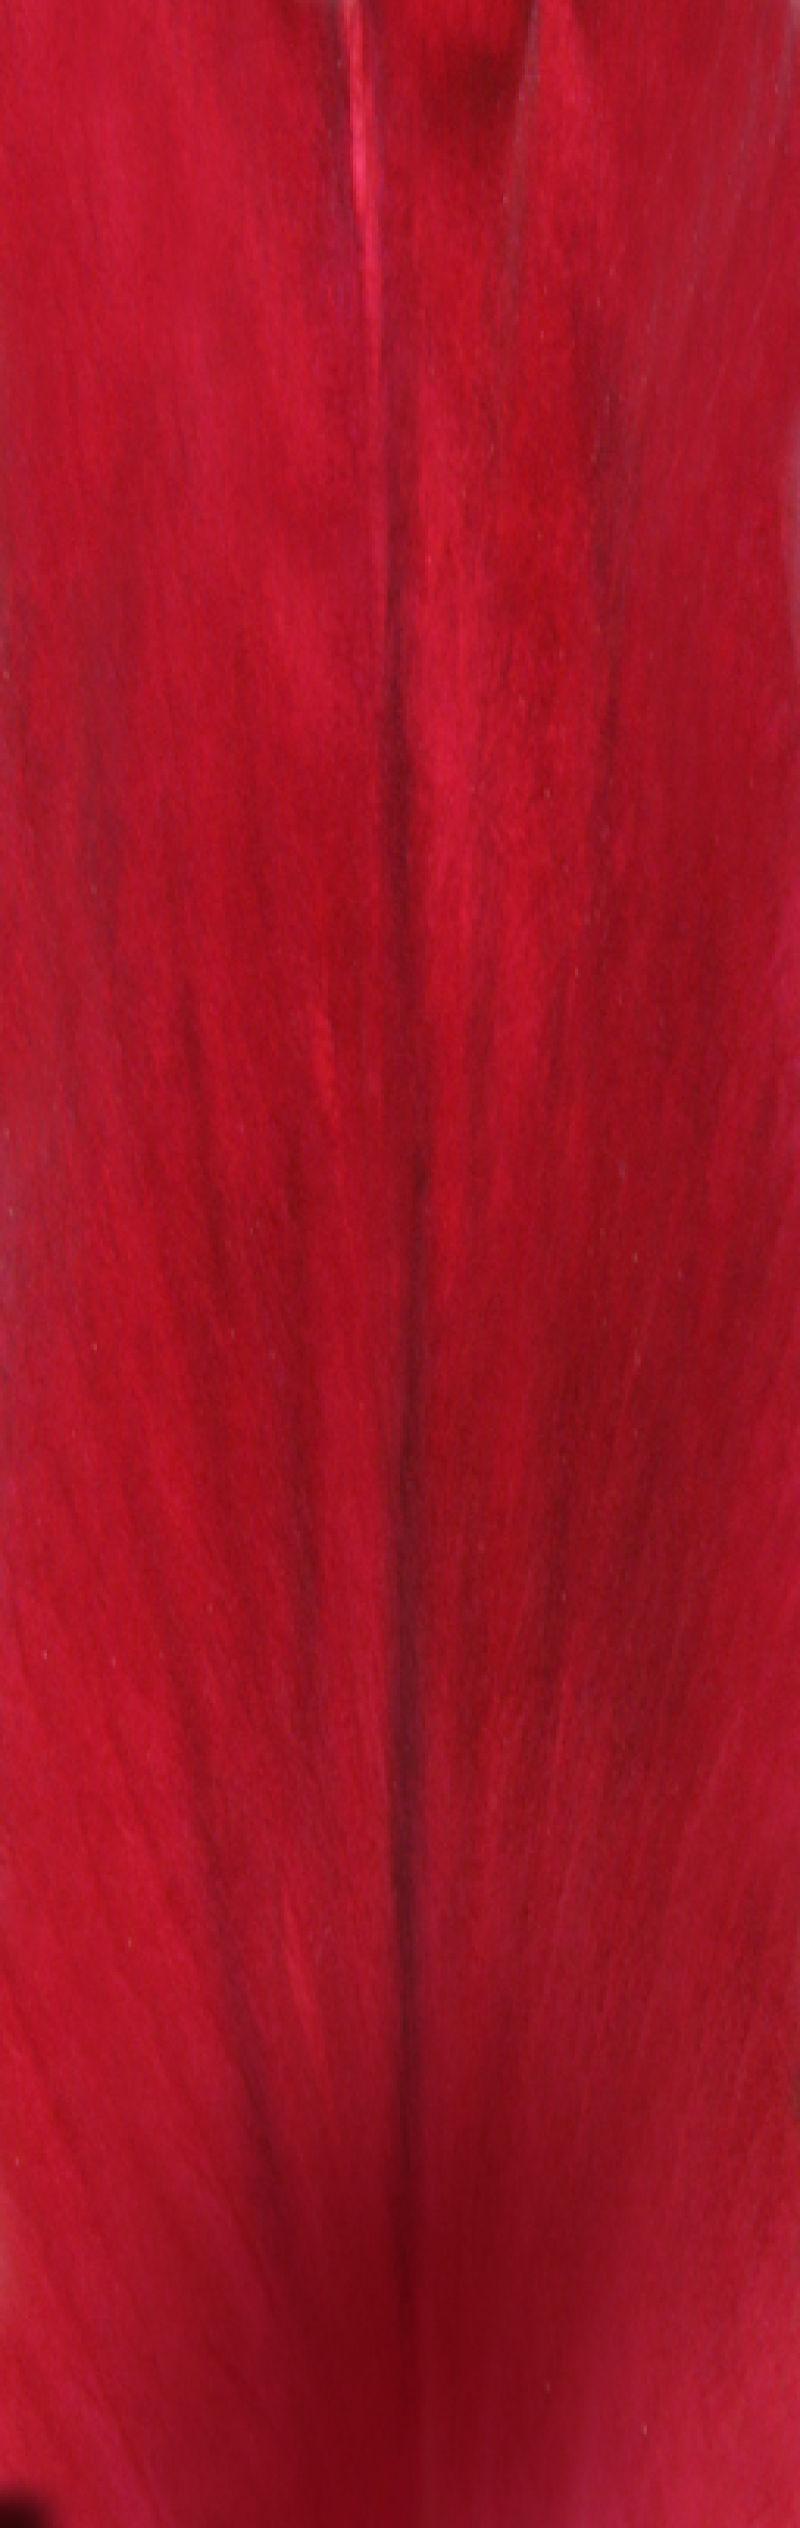 红色叶子纹理背景